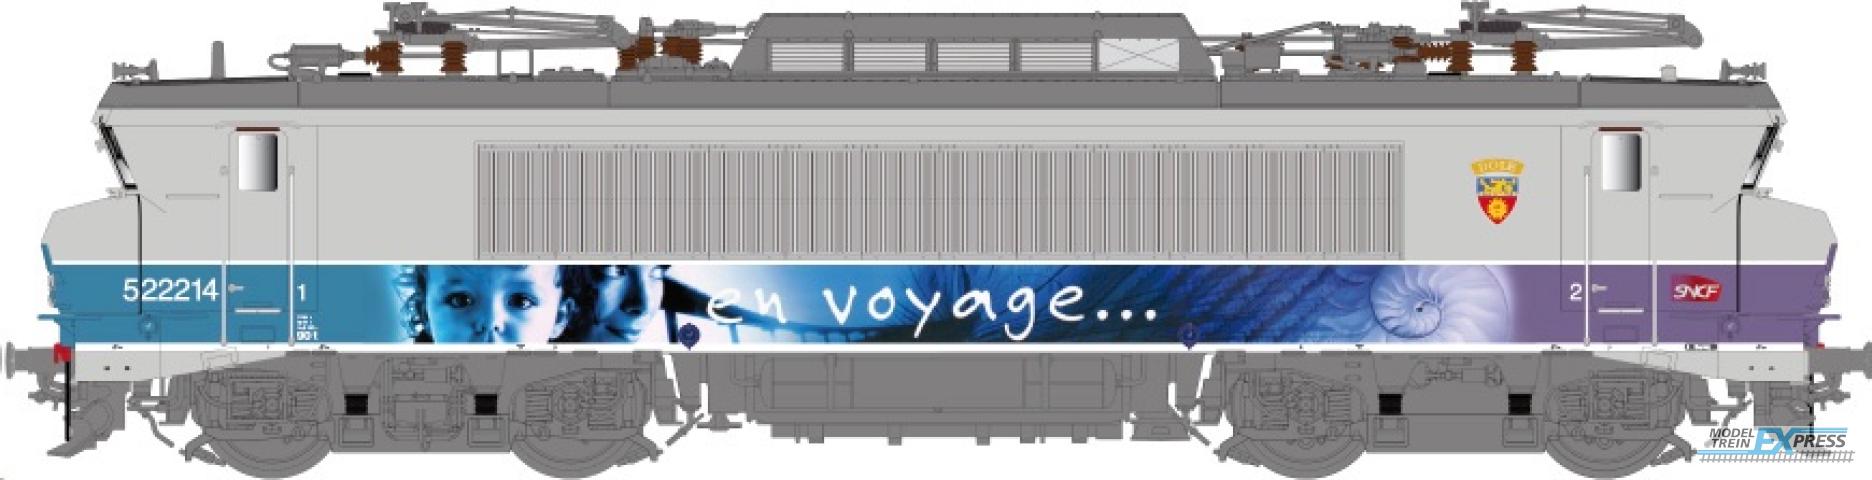 LS Models 10055 BB 22200, grijs/paars, En Voyage, carmillon logo, front nummer, kleine cabine, blazoen Dole  /  Ep. V-VI  /  SNCF  /  HO  /  DC  /  1 P.